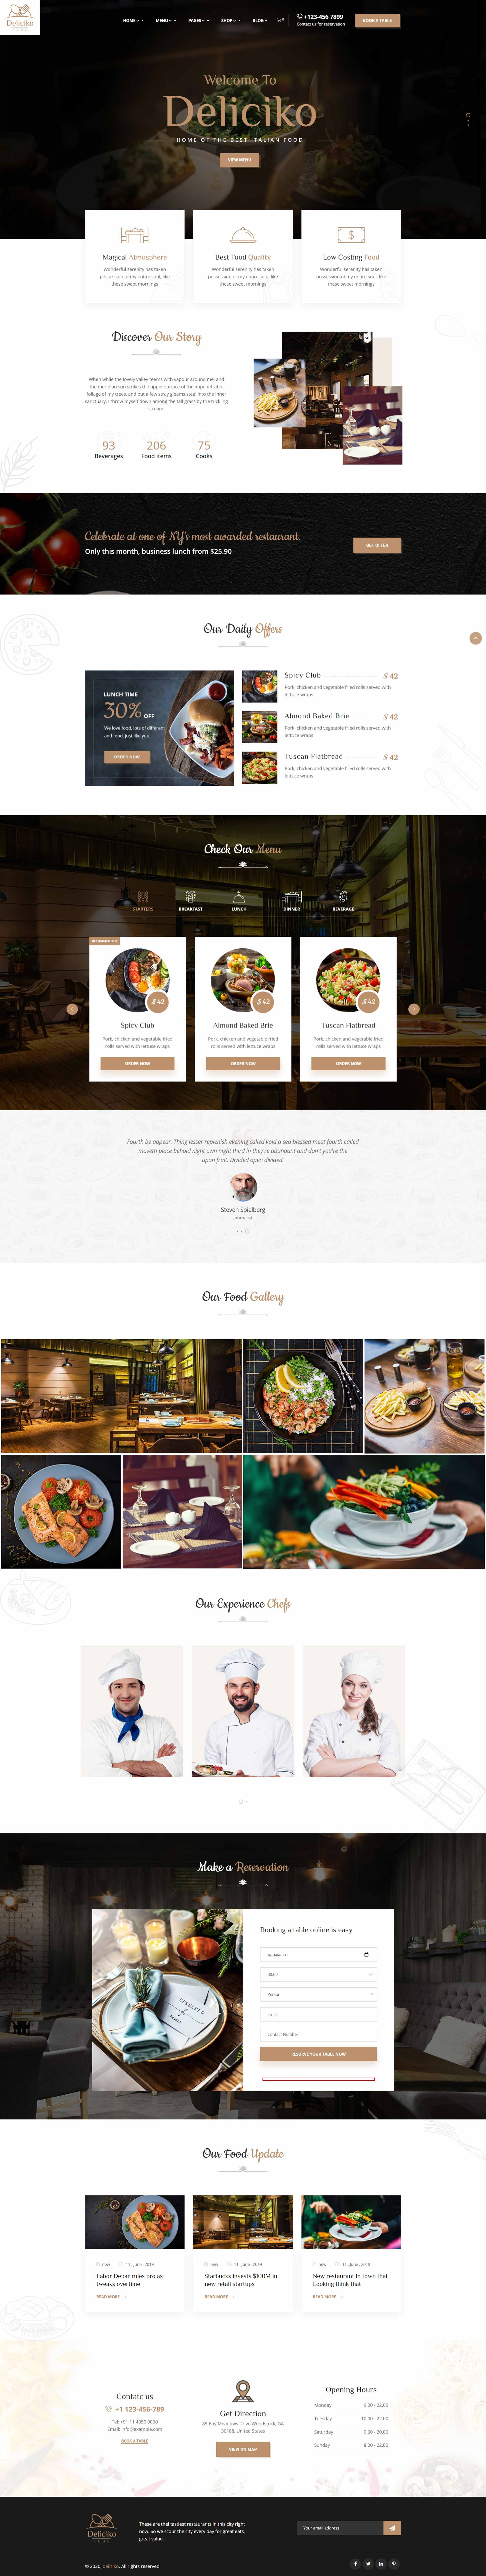 создание сайта для ресторана и кафе